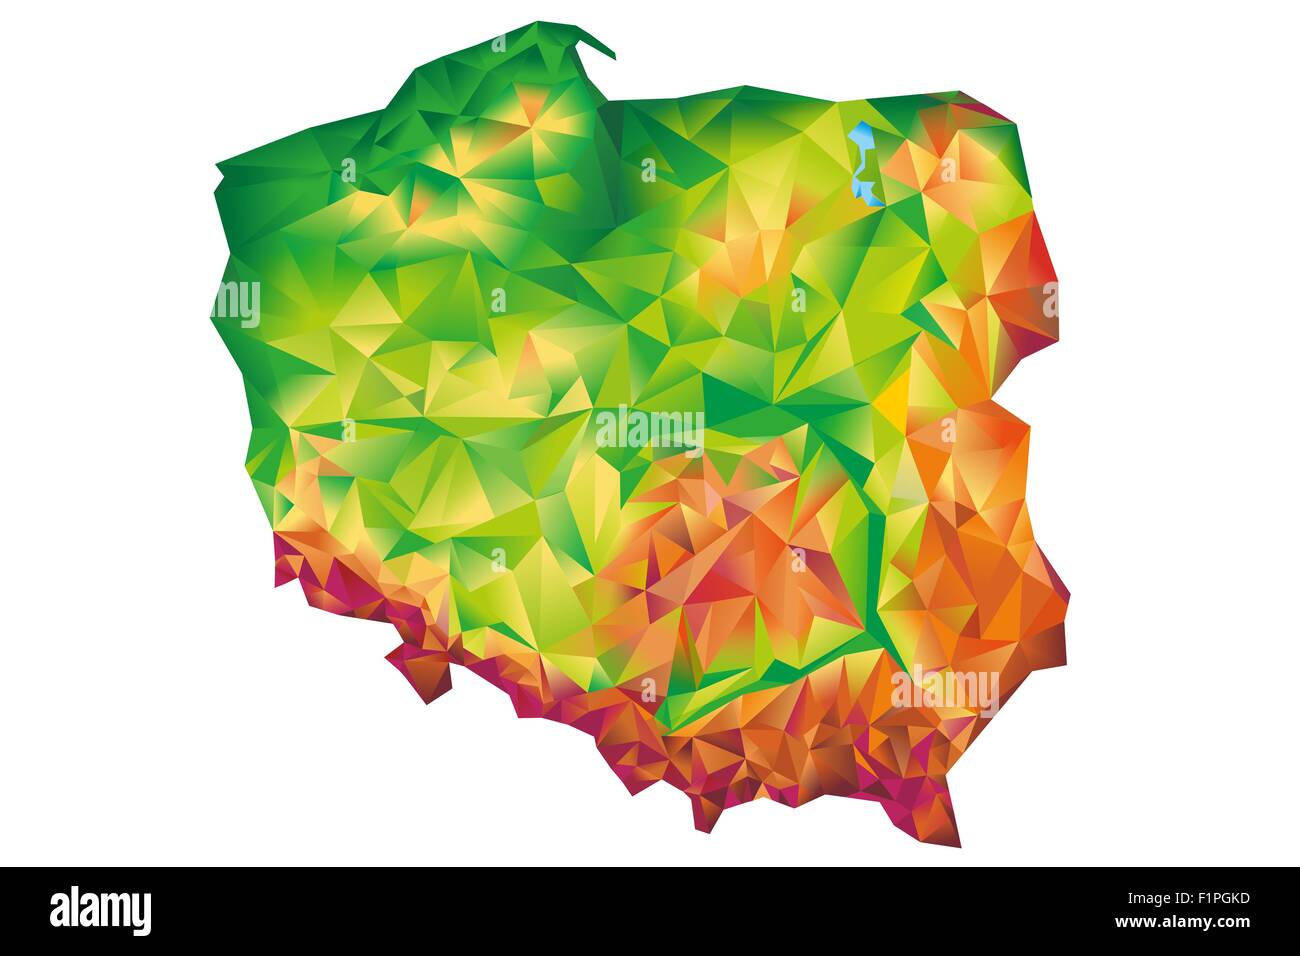 Geometric Poland Map Concept Illustration Isolated on White Background. Poland, Europe. Stock Photo